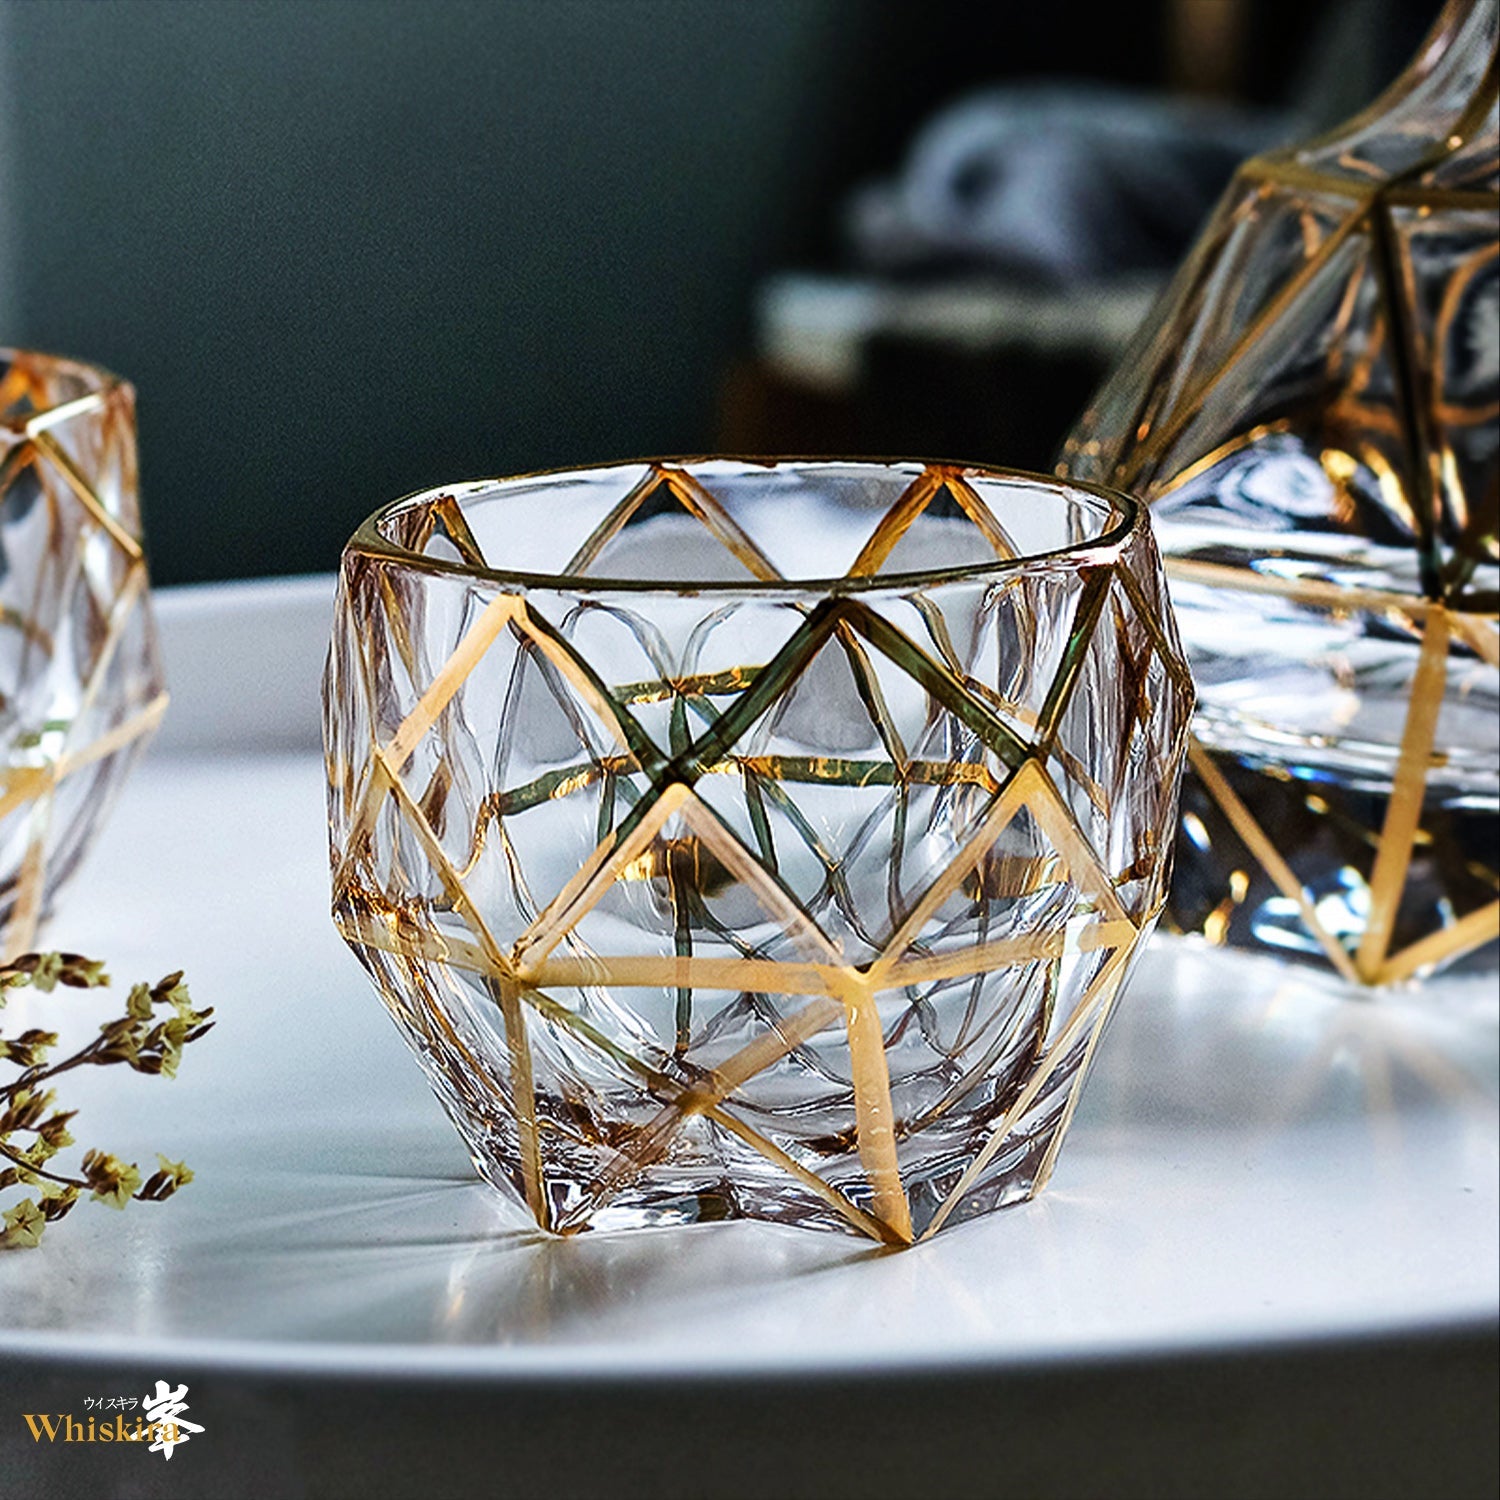 Double Wall Glass Set – Whiskira International